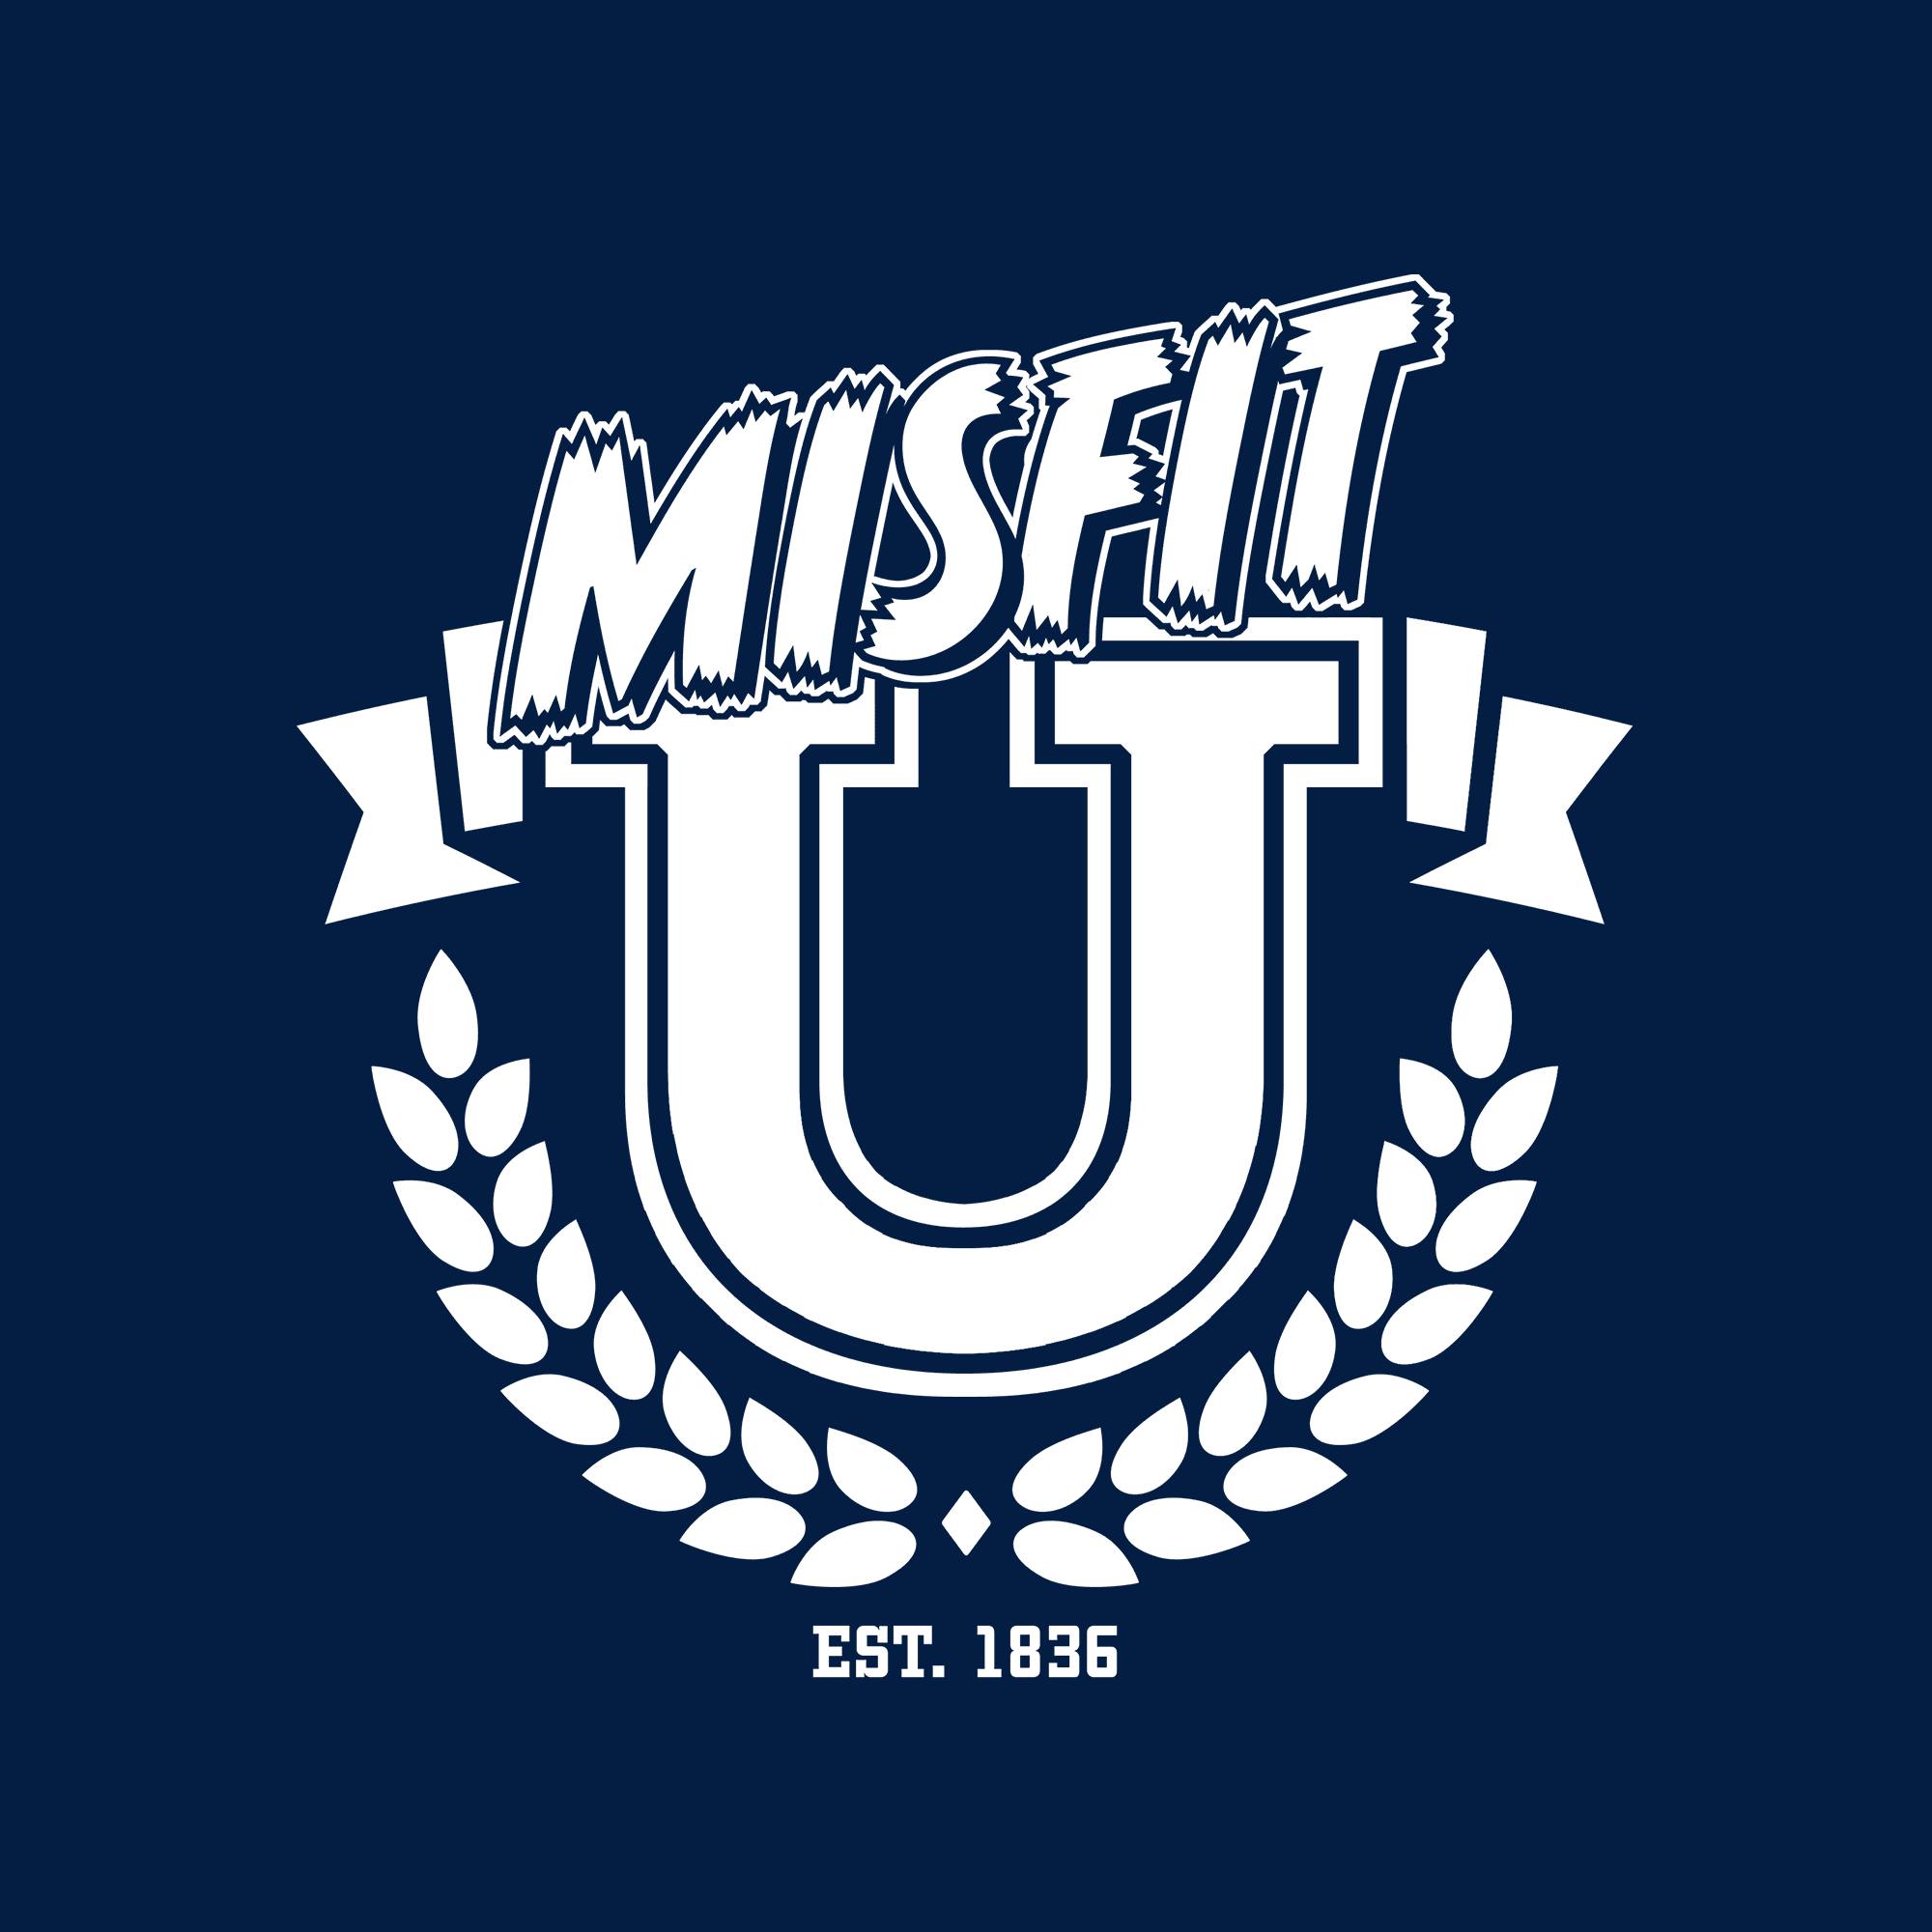 Misfit University Official